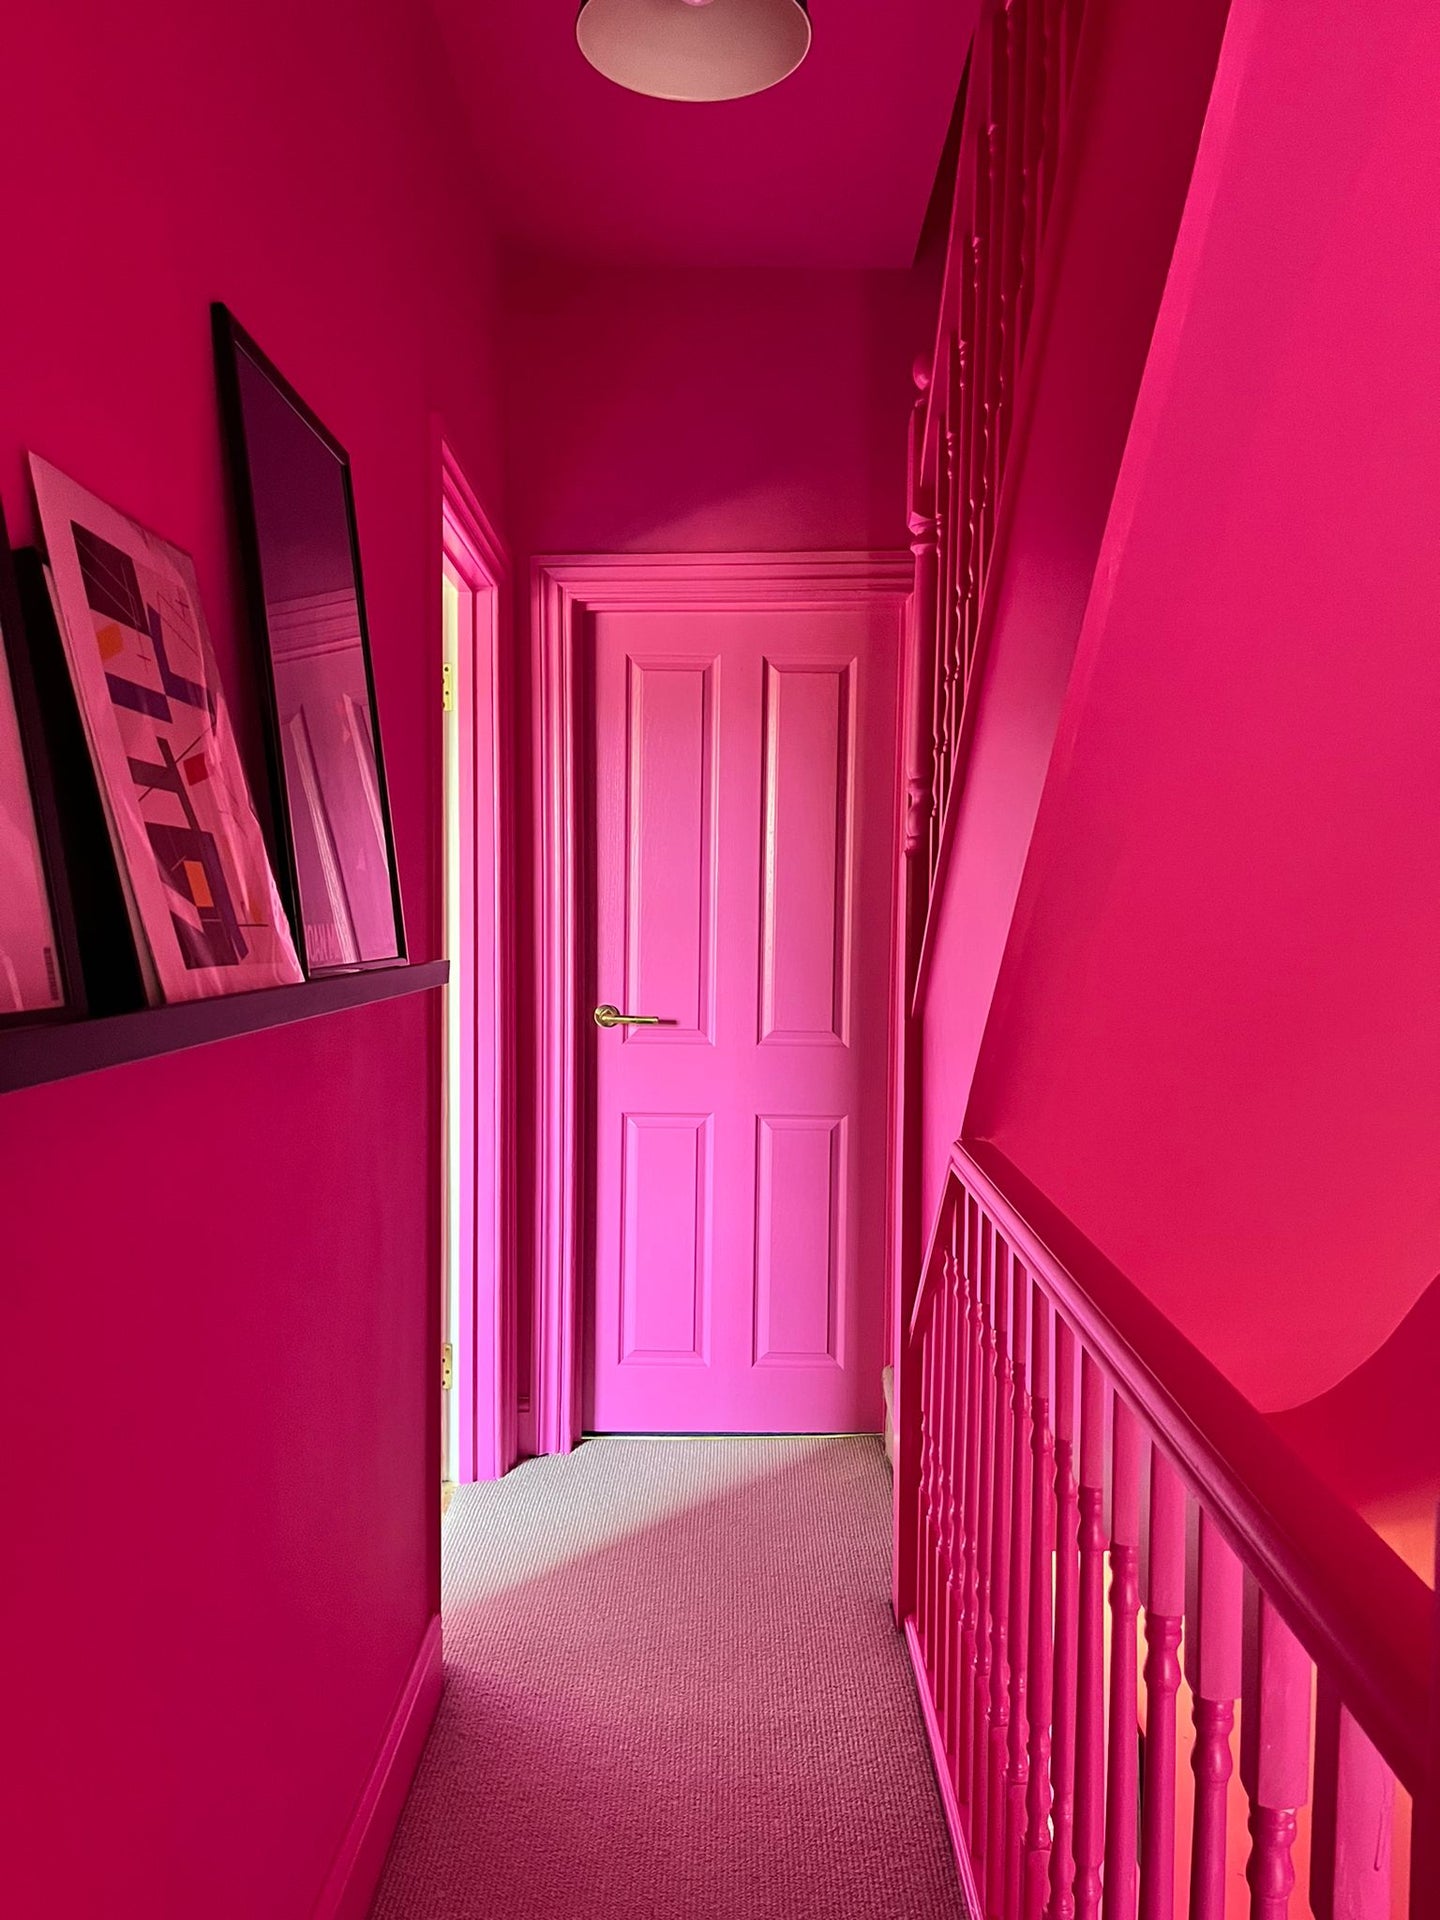 YesColours premium Passionate Pink paint swatch Dulux Paint, Coat Paint, Lick Paint, Edward Bulmer, Passionate Pink Pink Red / Pink Swatch